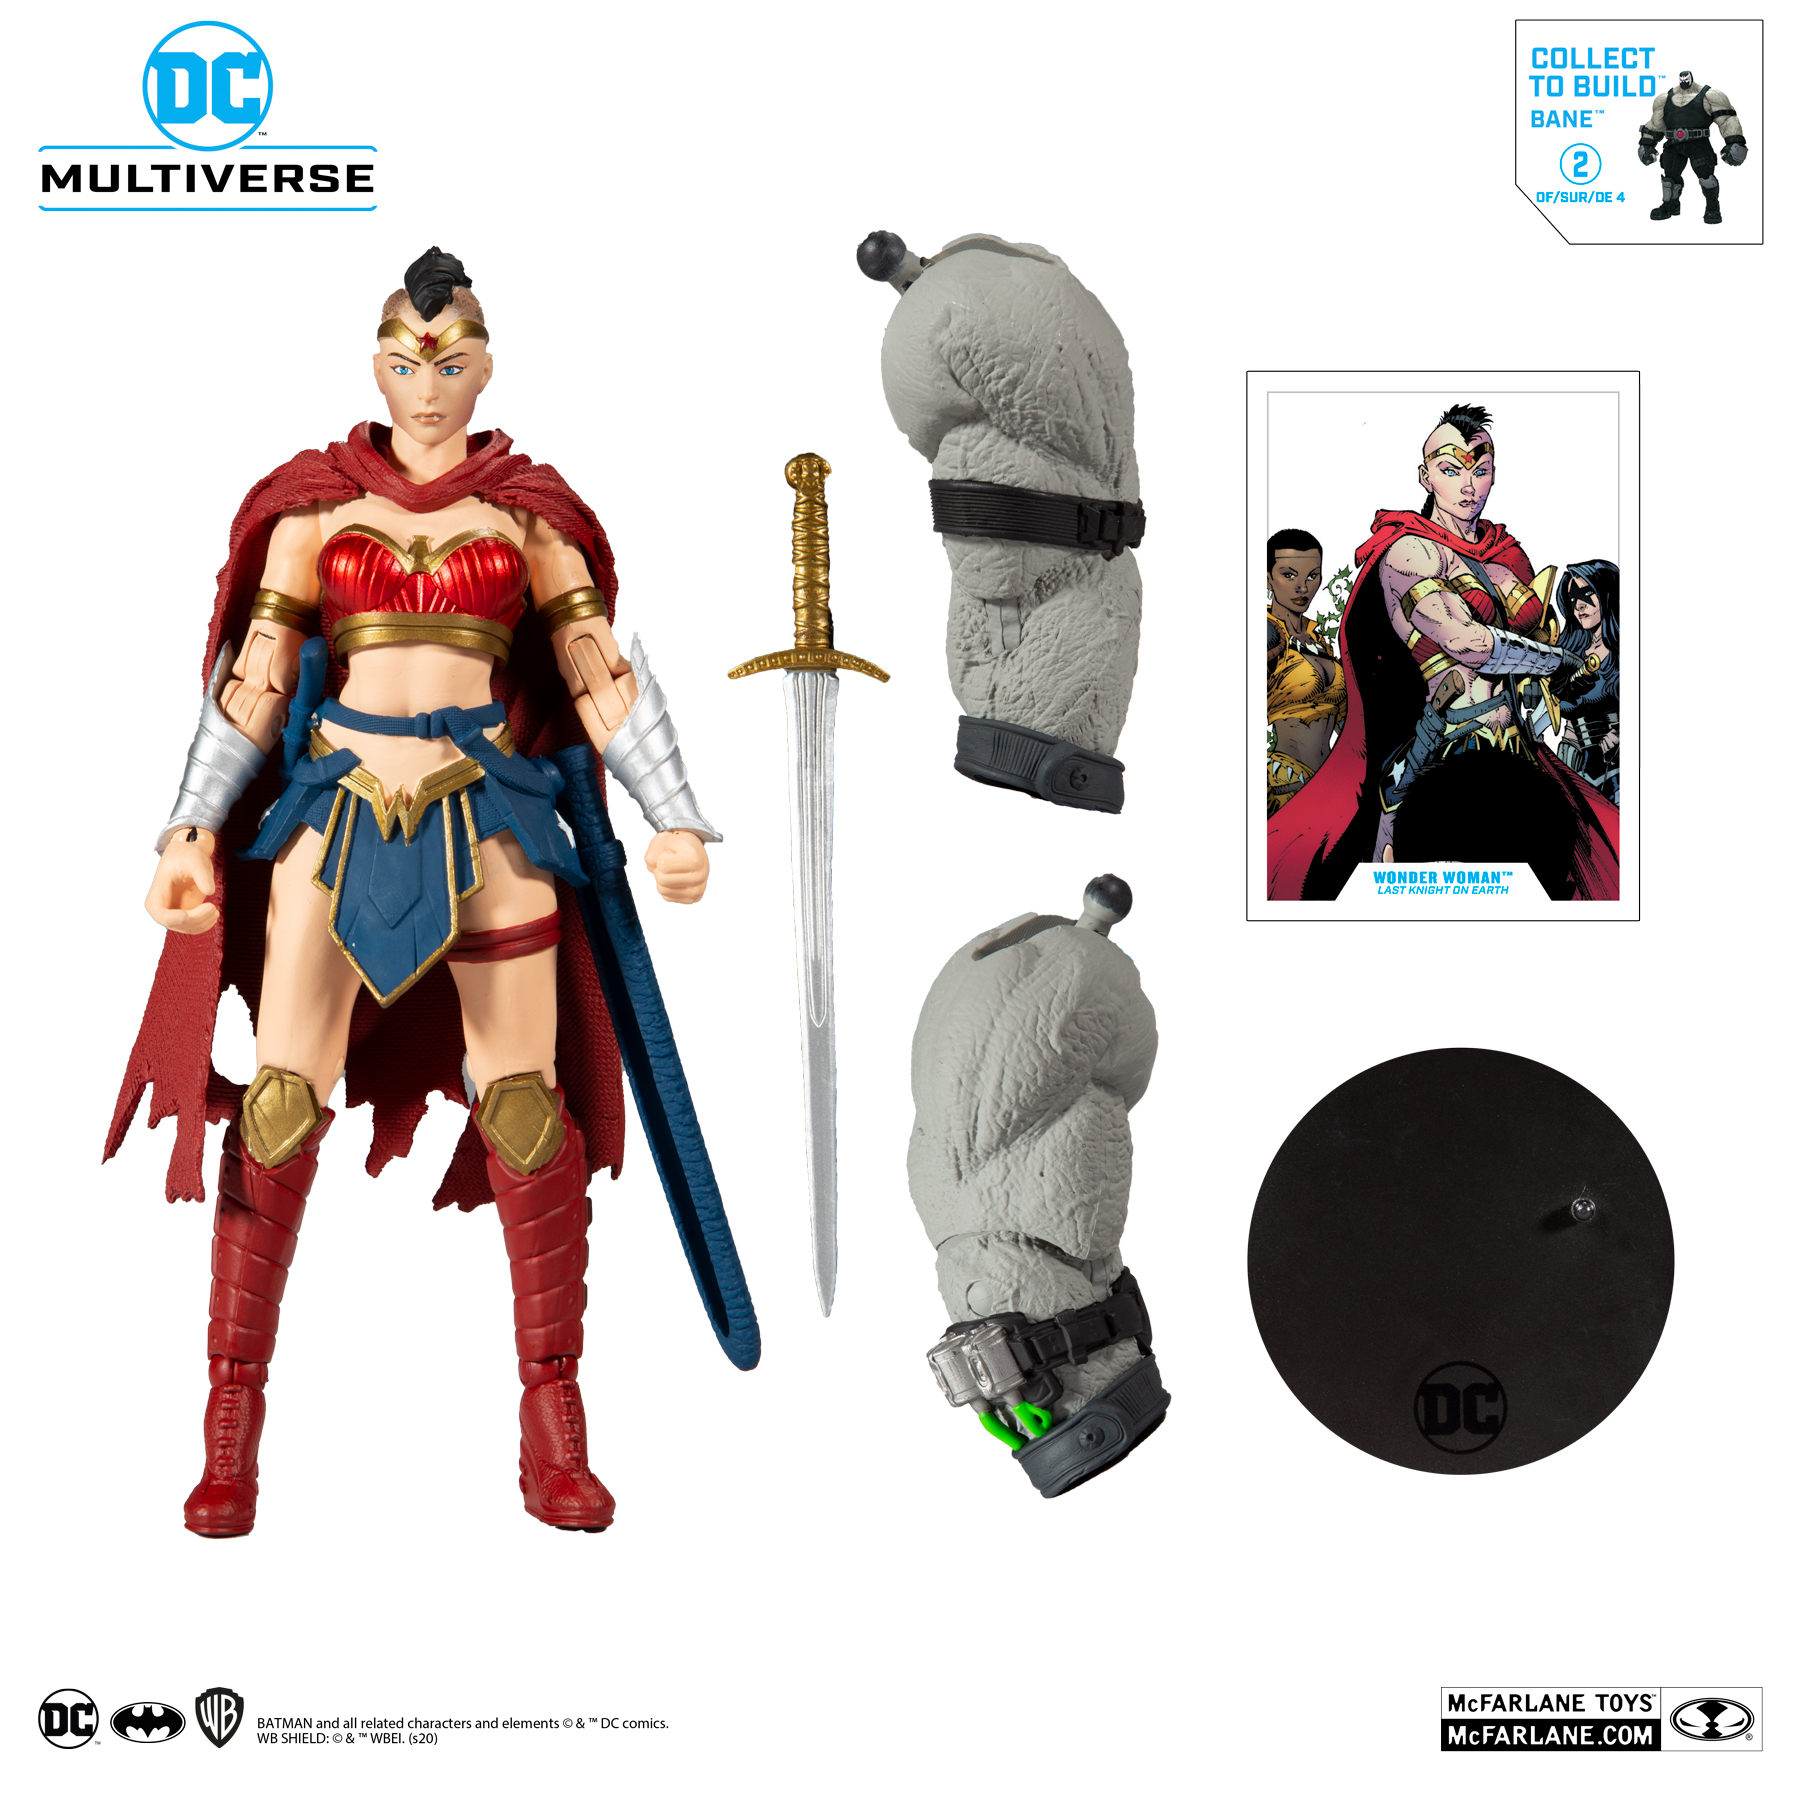 McFarlane Toys DC Multiverse Build A Bane Actionfigur Wonder Woman 18 cm 